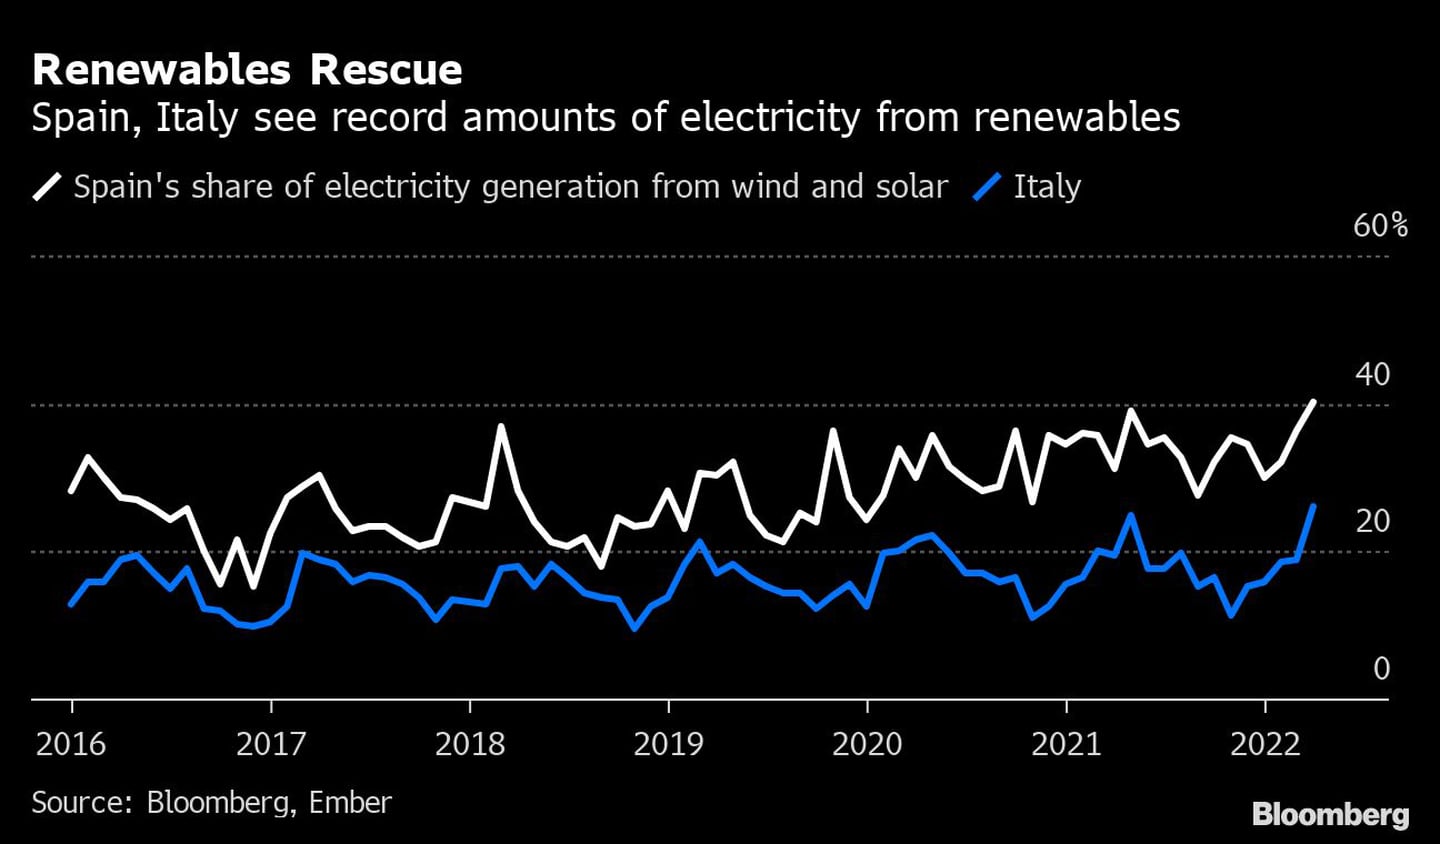  España e Italia registran cantidades récord de electricidad procedente de energías renovables
Blanco: Cuota de España en la generación de electricidad a partir de la energía eólica y solar 
Azul: Italiadfd